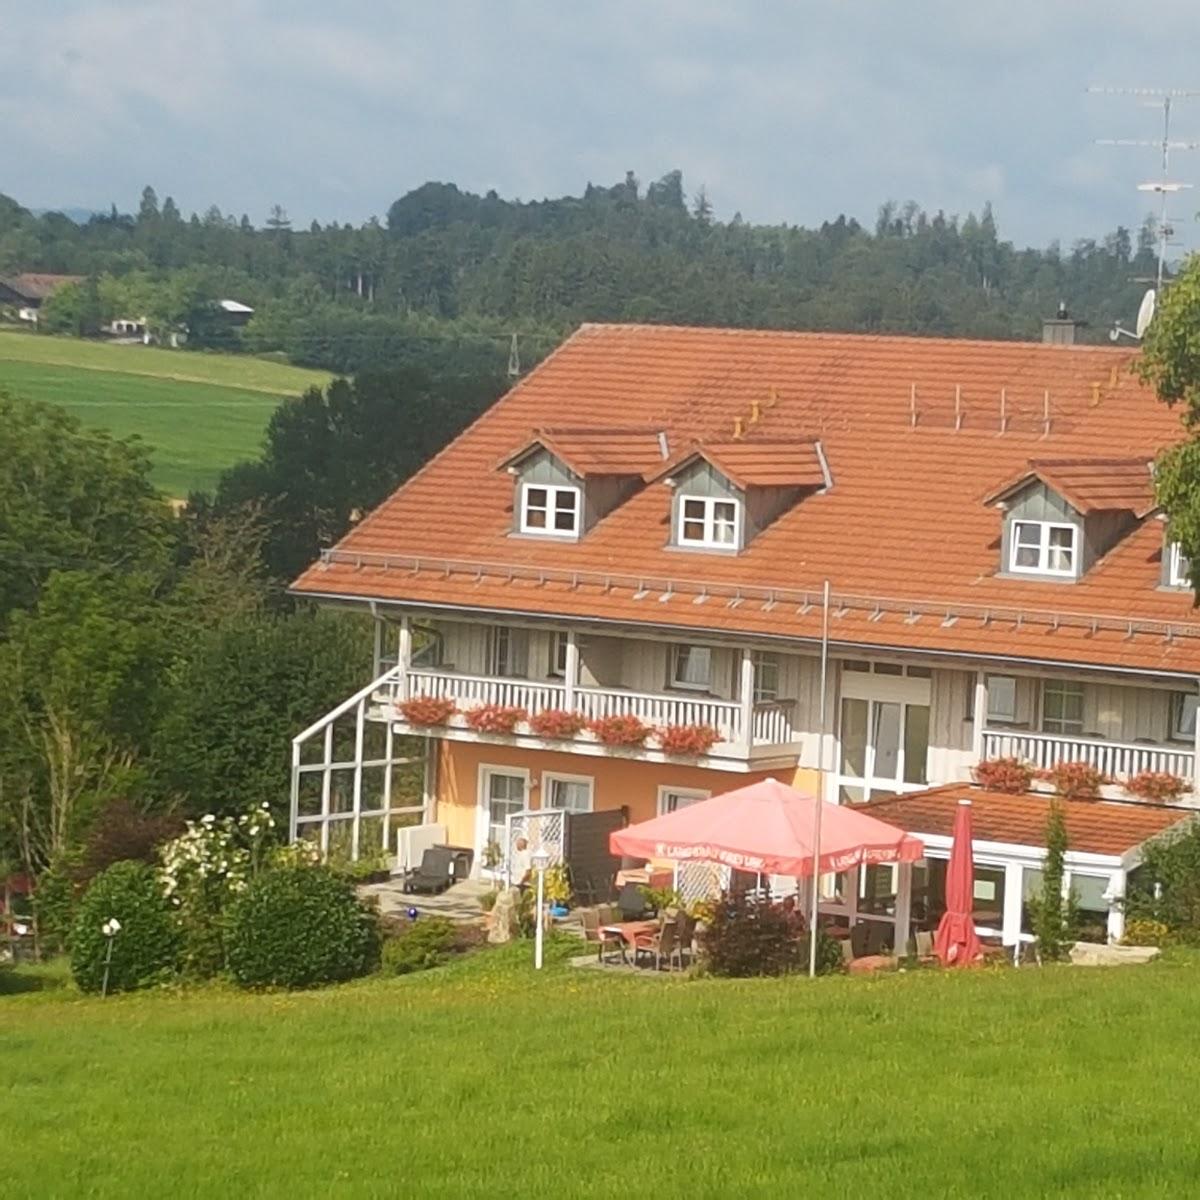 Restaurant "Landhotel Eibl" in Röhrnbach